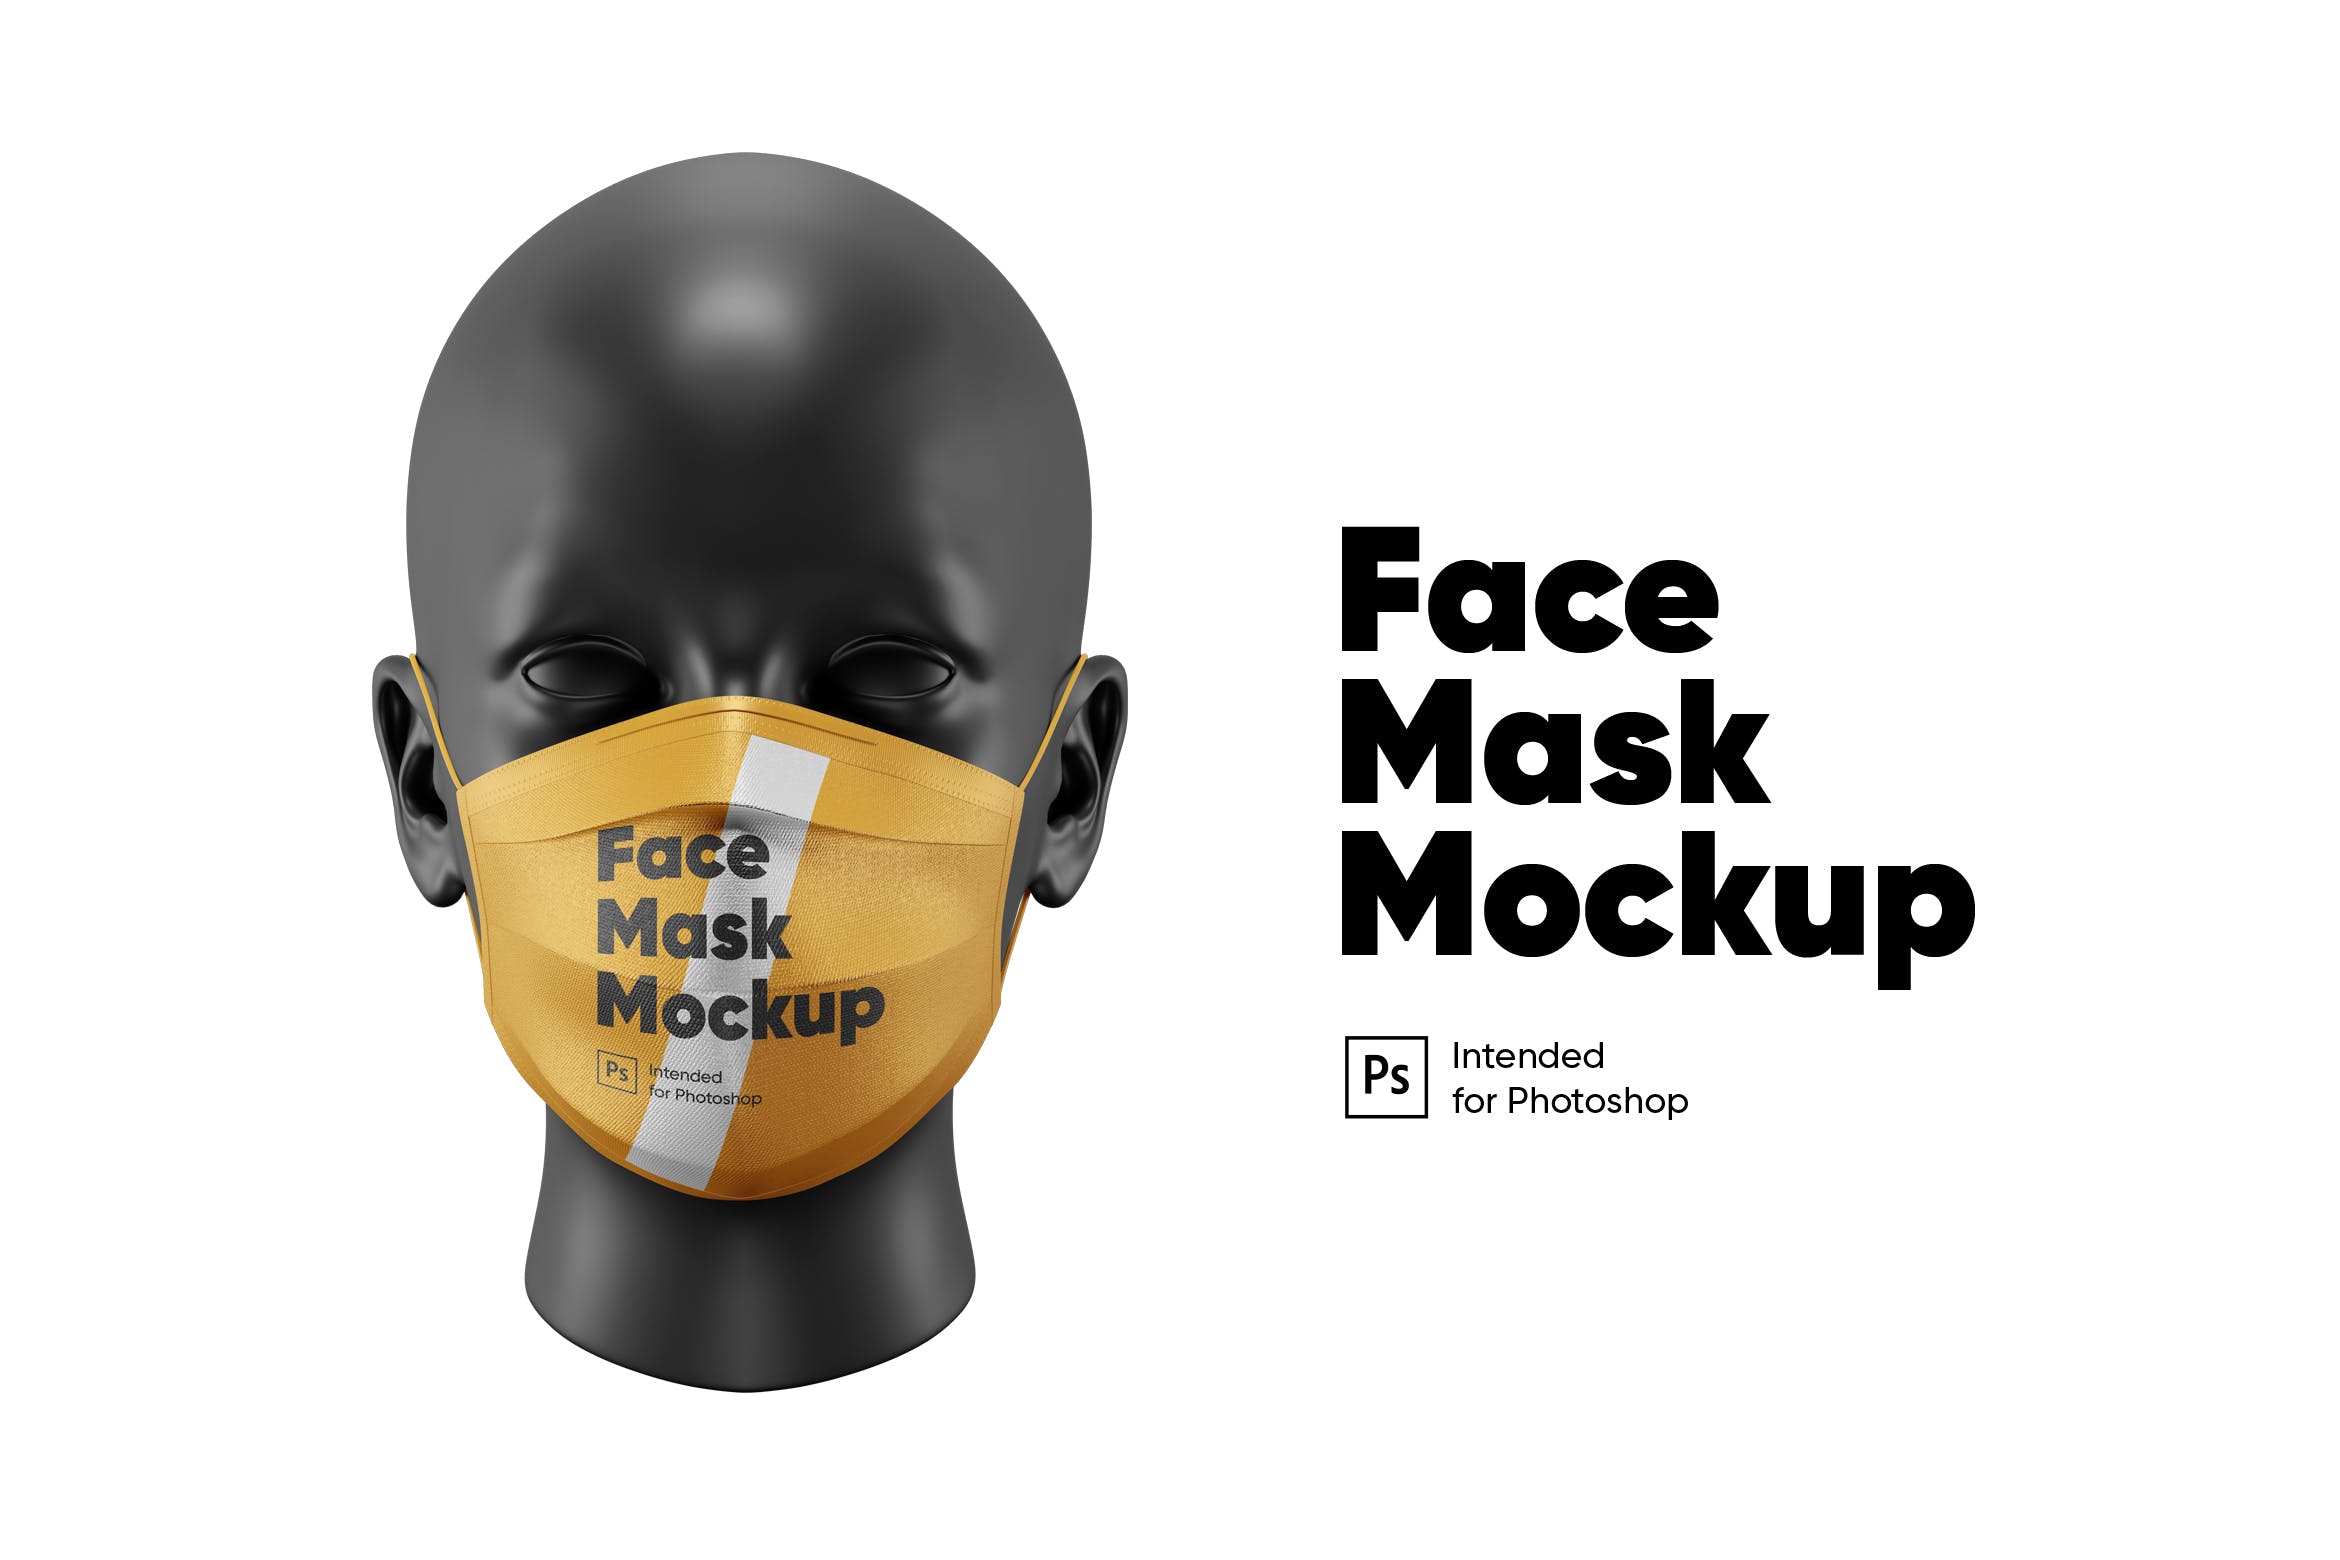 棉质口罩外观图案设计正视图样机 Medical Mask Mockup设计素材模板